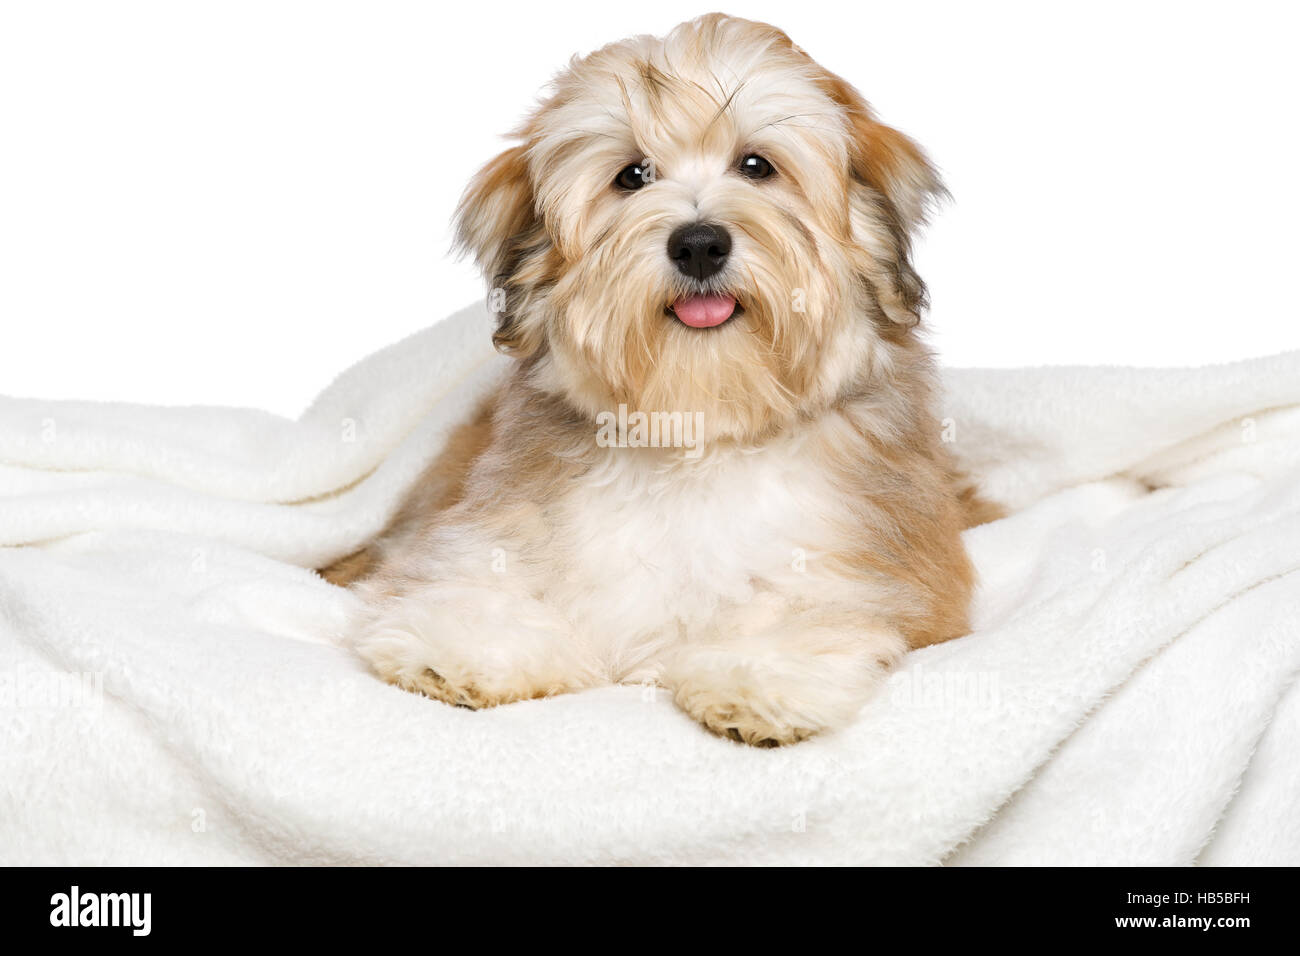 Glücklicher rötlicher Bichon Havaneser Welpen Hund liegt auf einem weißen Bettdecke Stockfoto